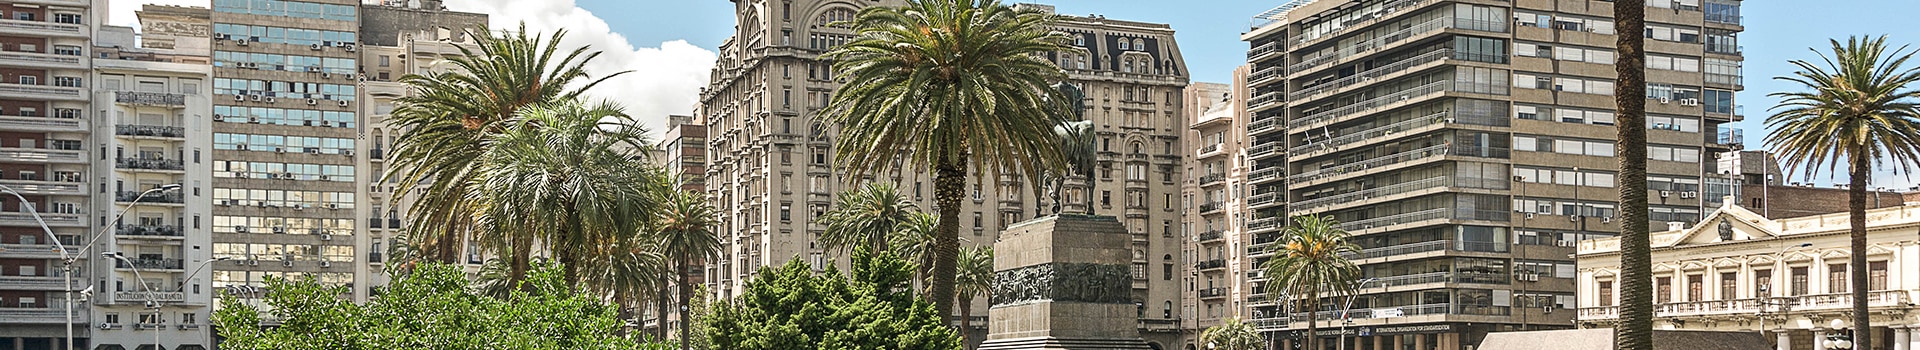 Malaga - Montevideo